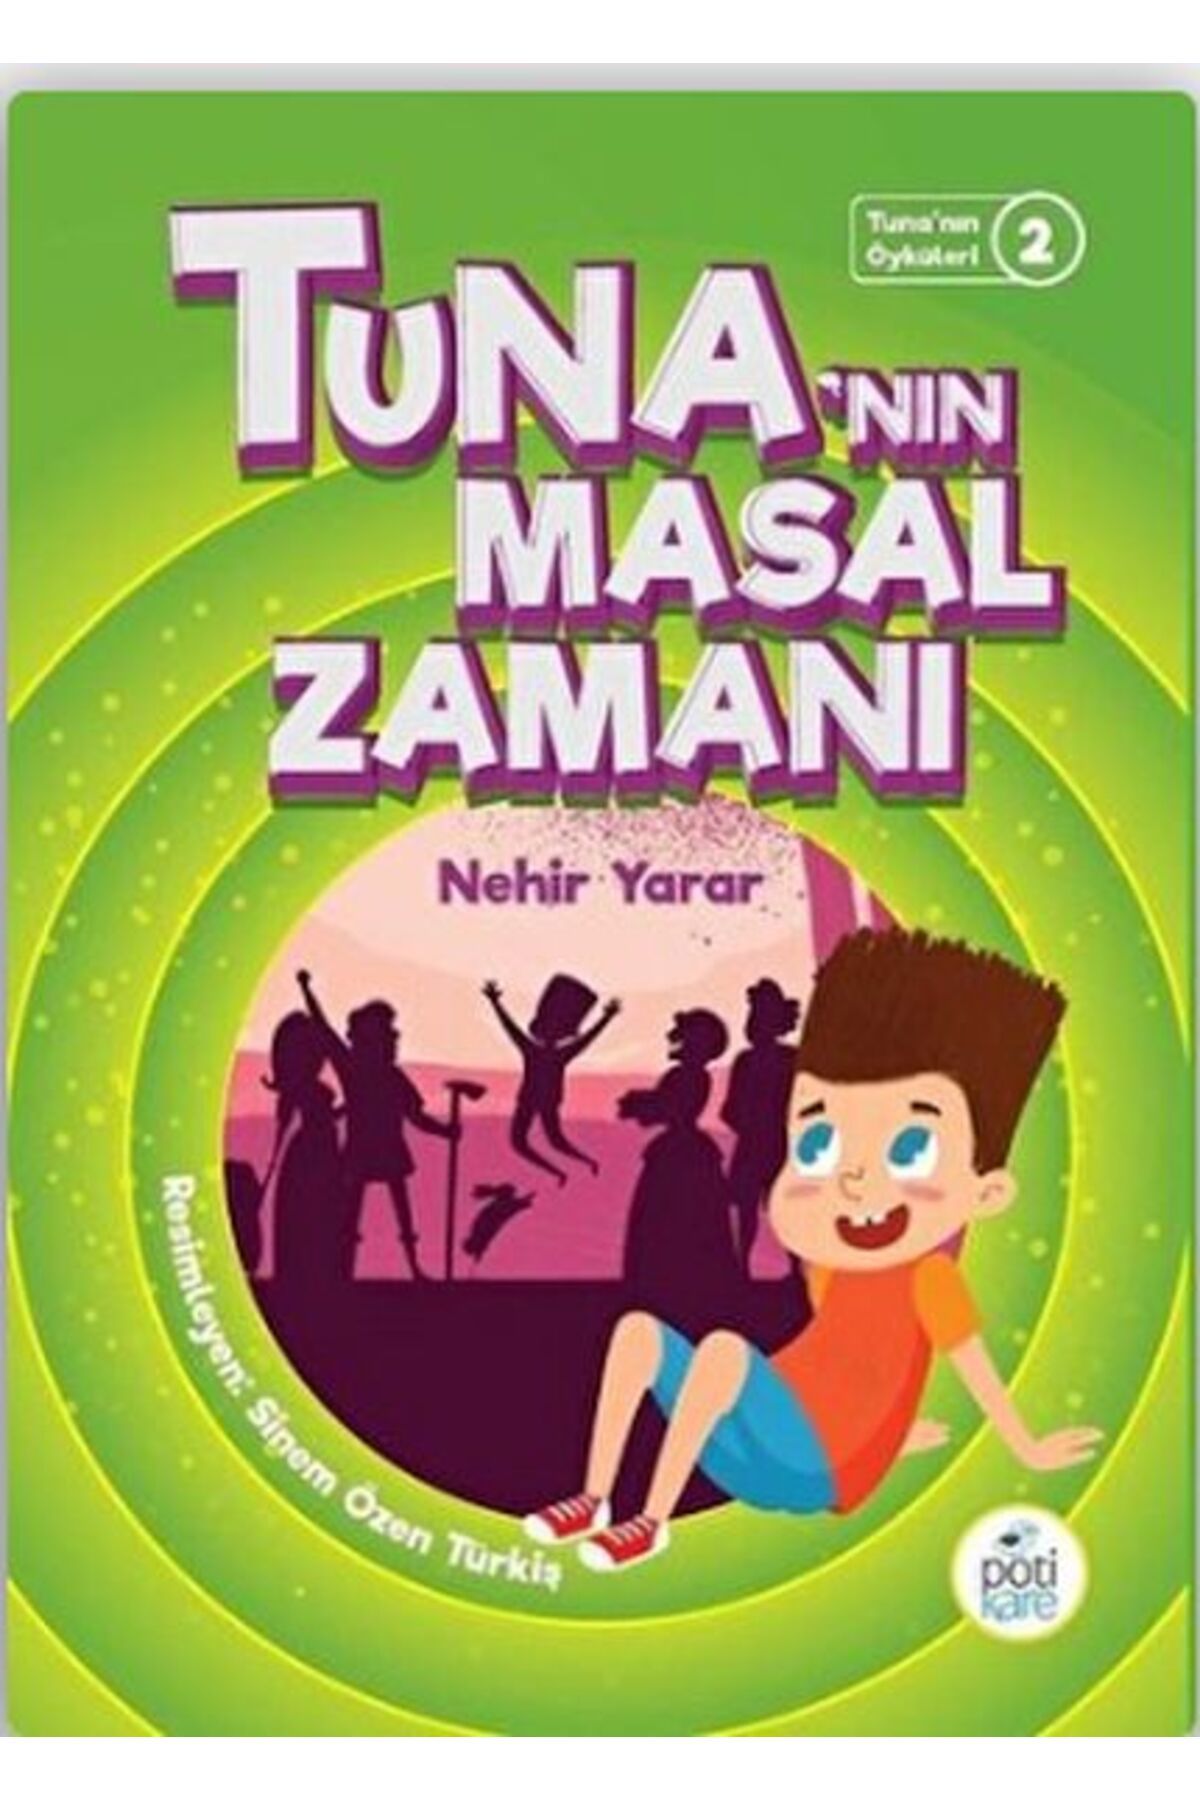 Pötikare Yayınları Tuna'nın Öyküleri 2 - Tuna'nın Masal Zamanı Pötikare Yayınları (Korunaklı Poşetle)